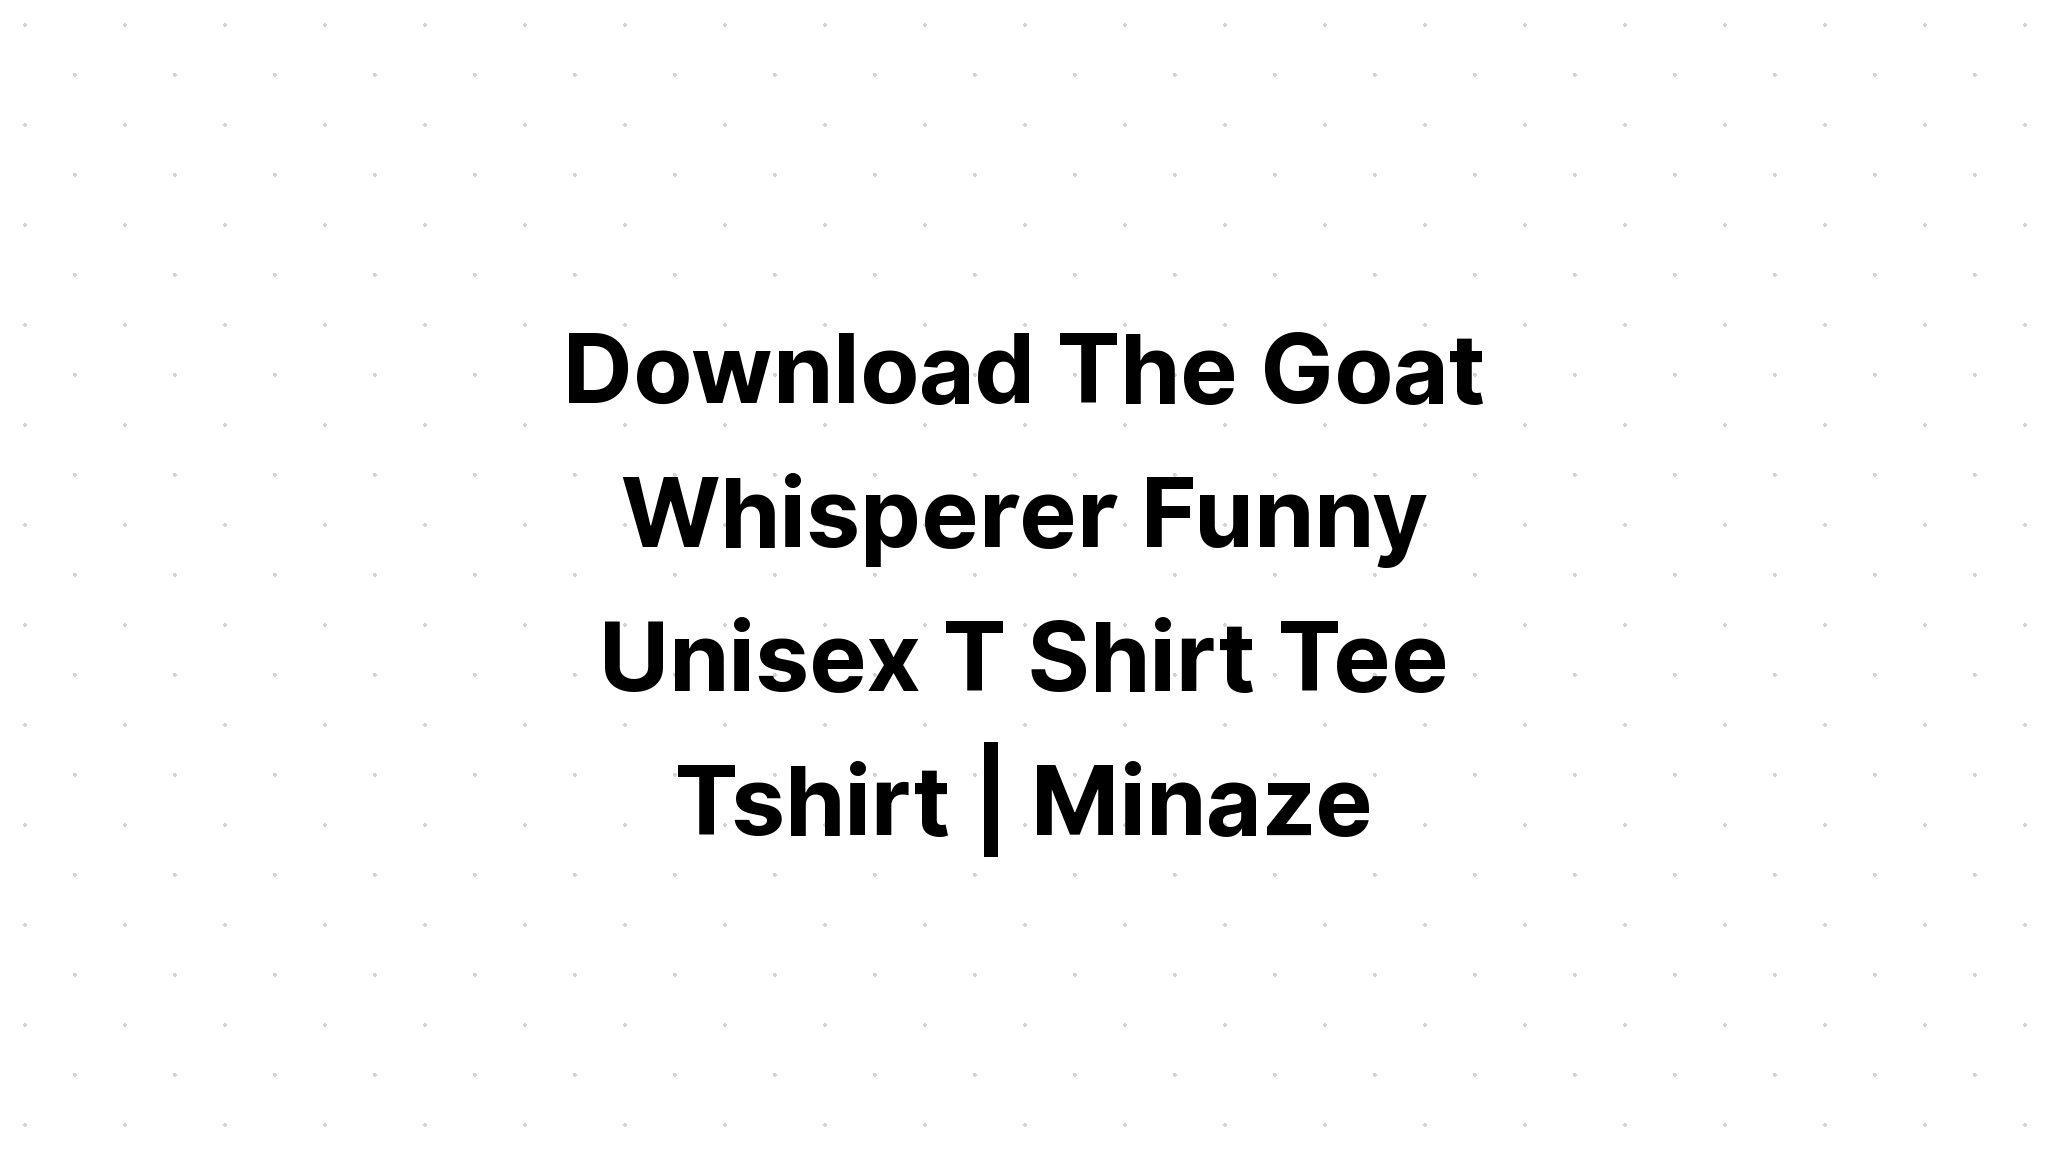 Download Goat Whisperer Funny Vintage Goat Svg SVG File